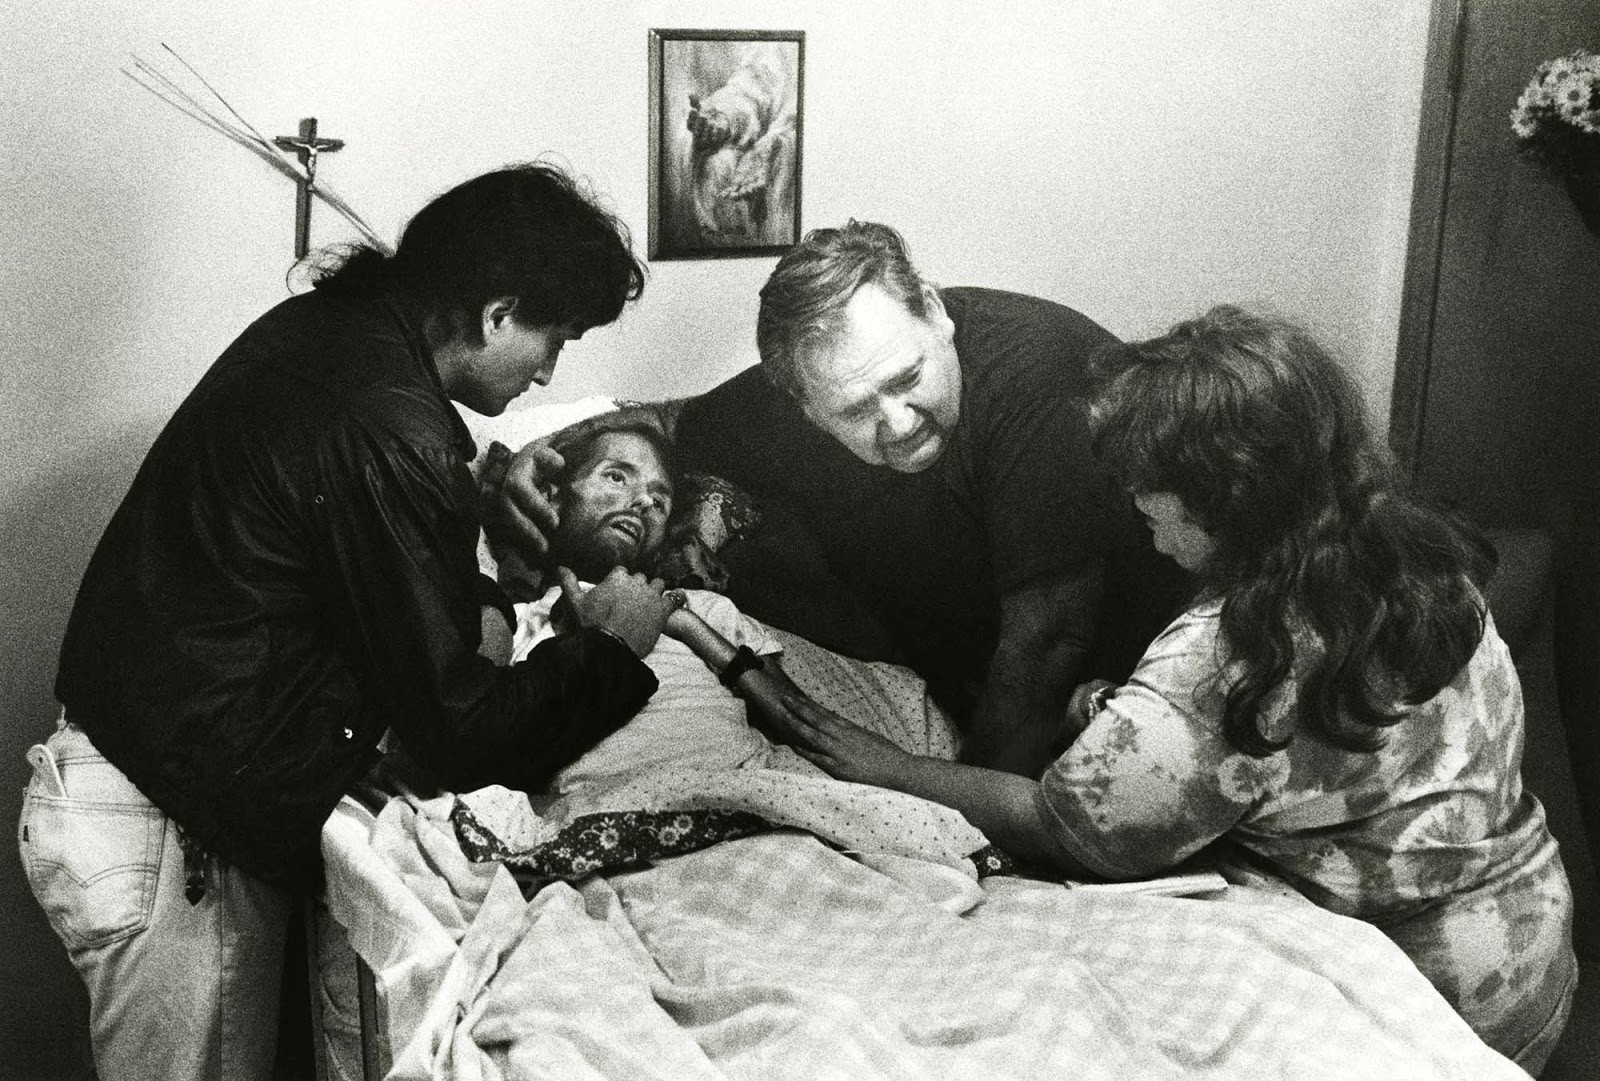 Khoảnh khắc người cha ôm chặt con trai trên giường bệnh và câu chuyện phía sau bức ảnh làm thay đổi bộ mặt của căn bệnh thế kỉ HIV/AIDS - Ảnh 2.